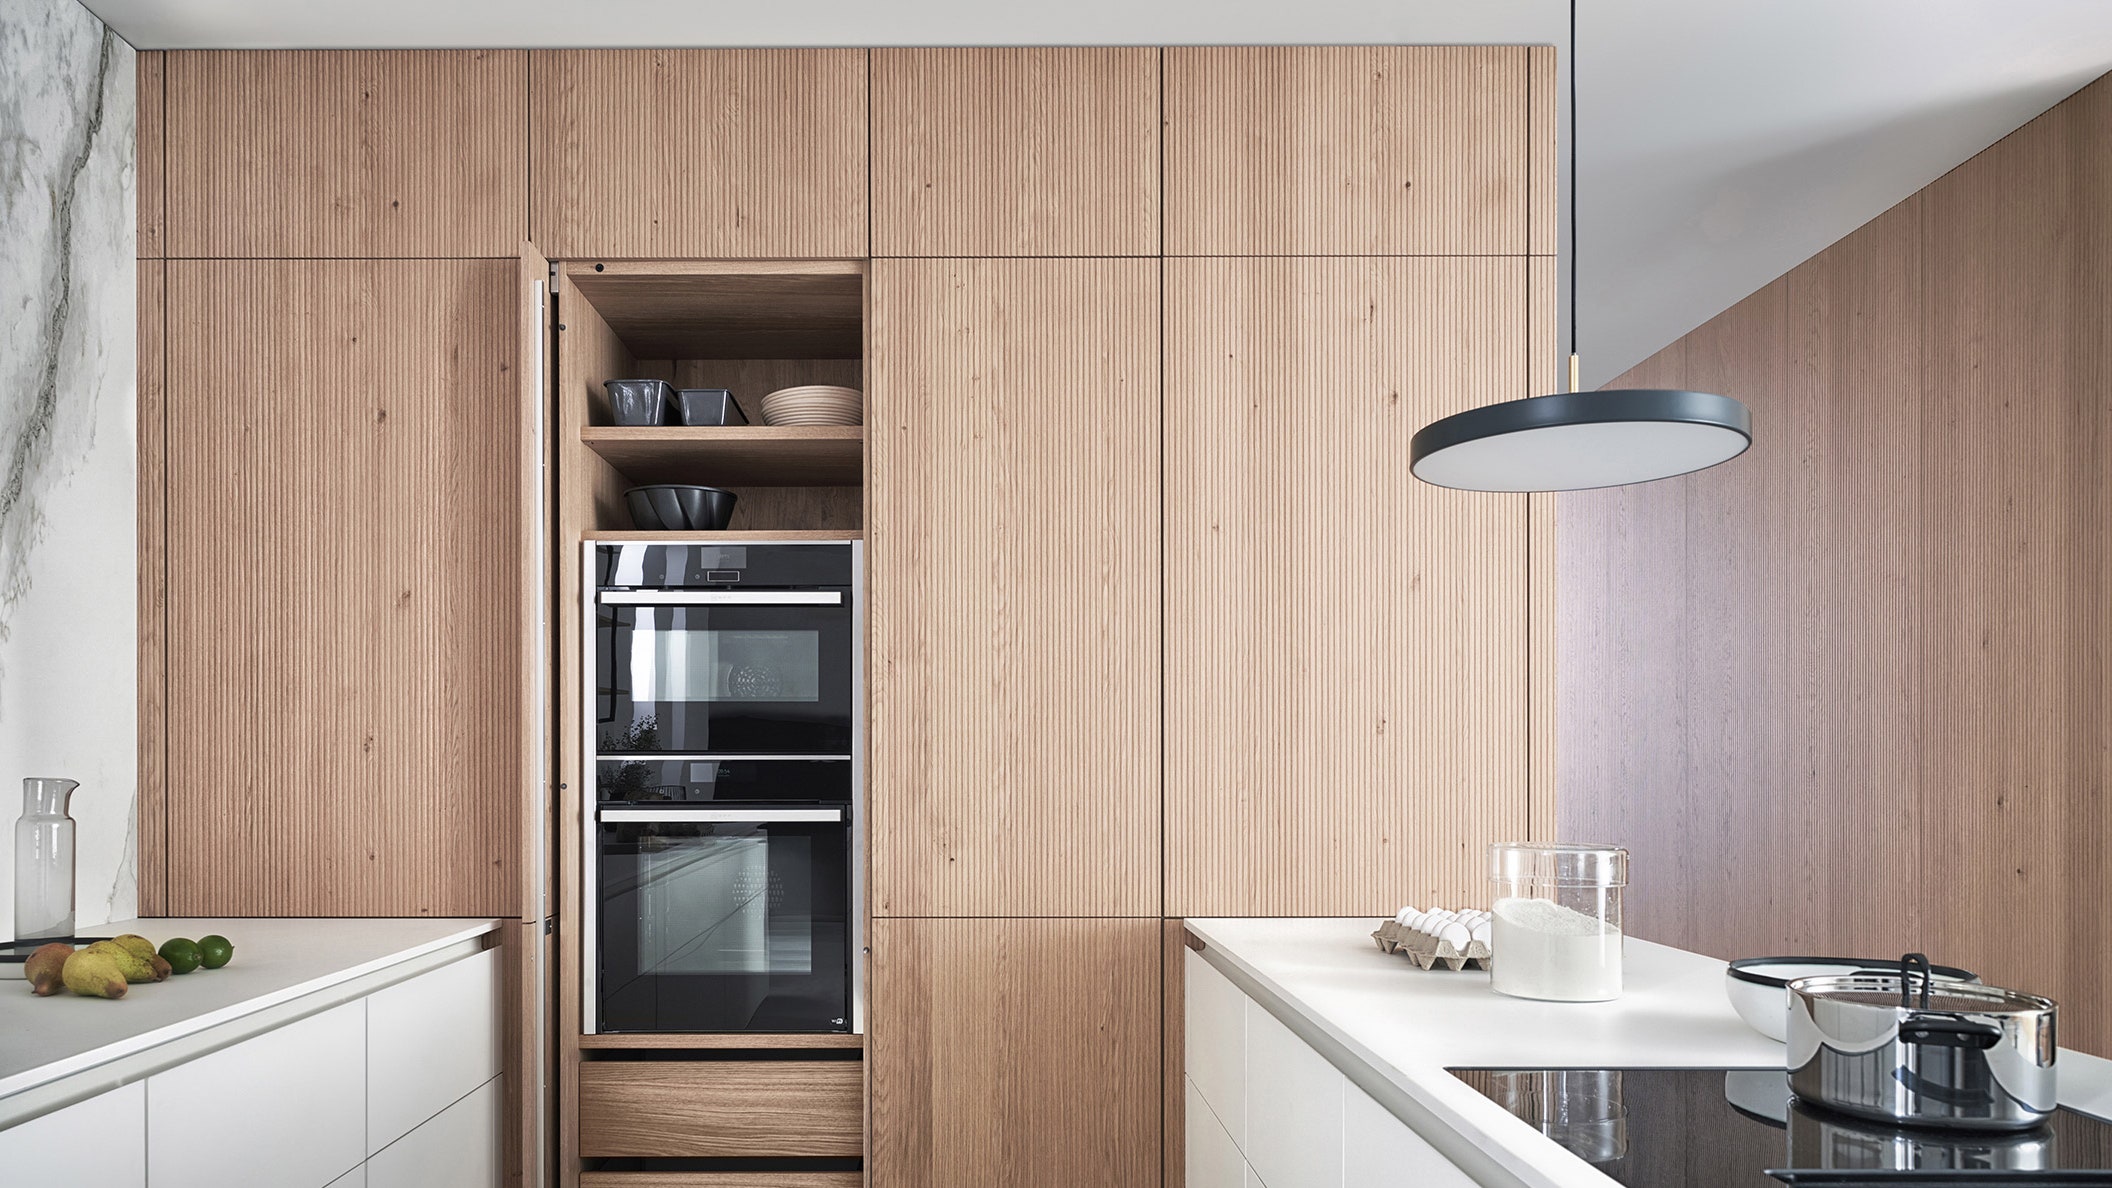 Кухня в стиле мягкого минимализма новая архитектурная коллекция от Leicht